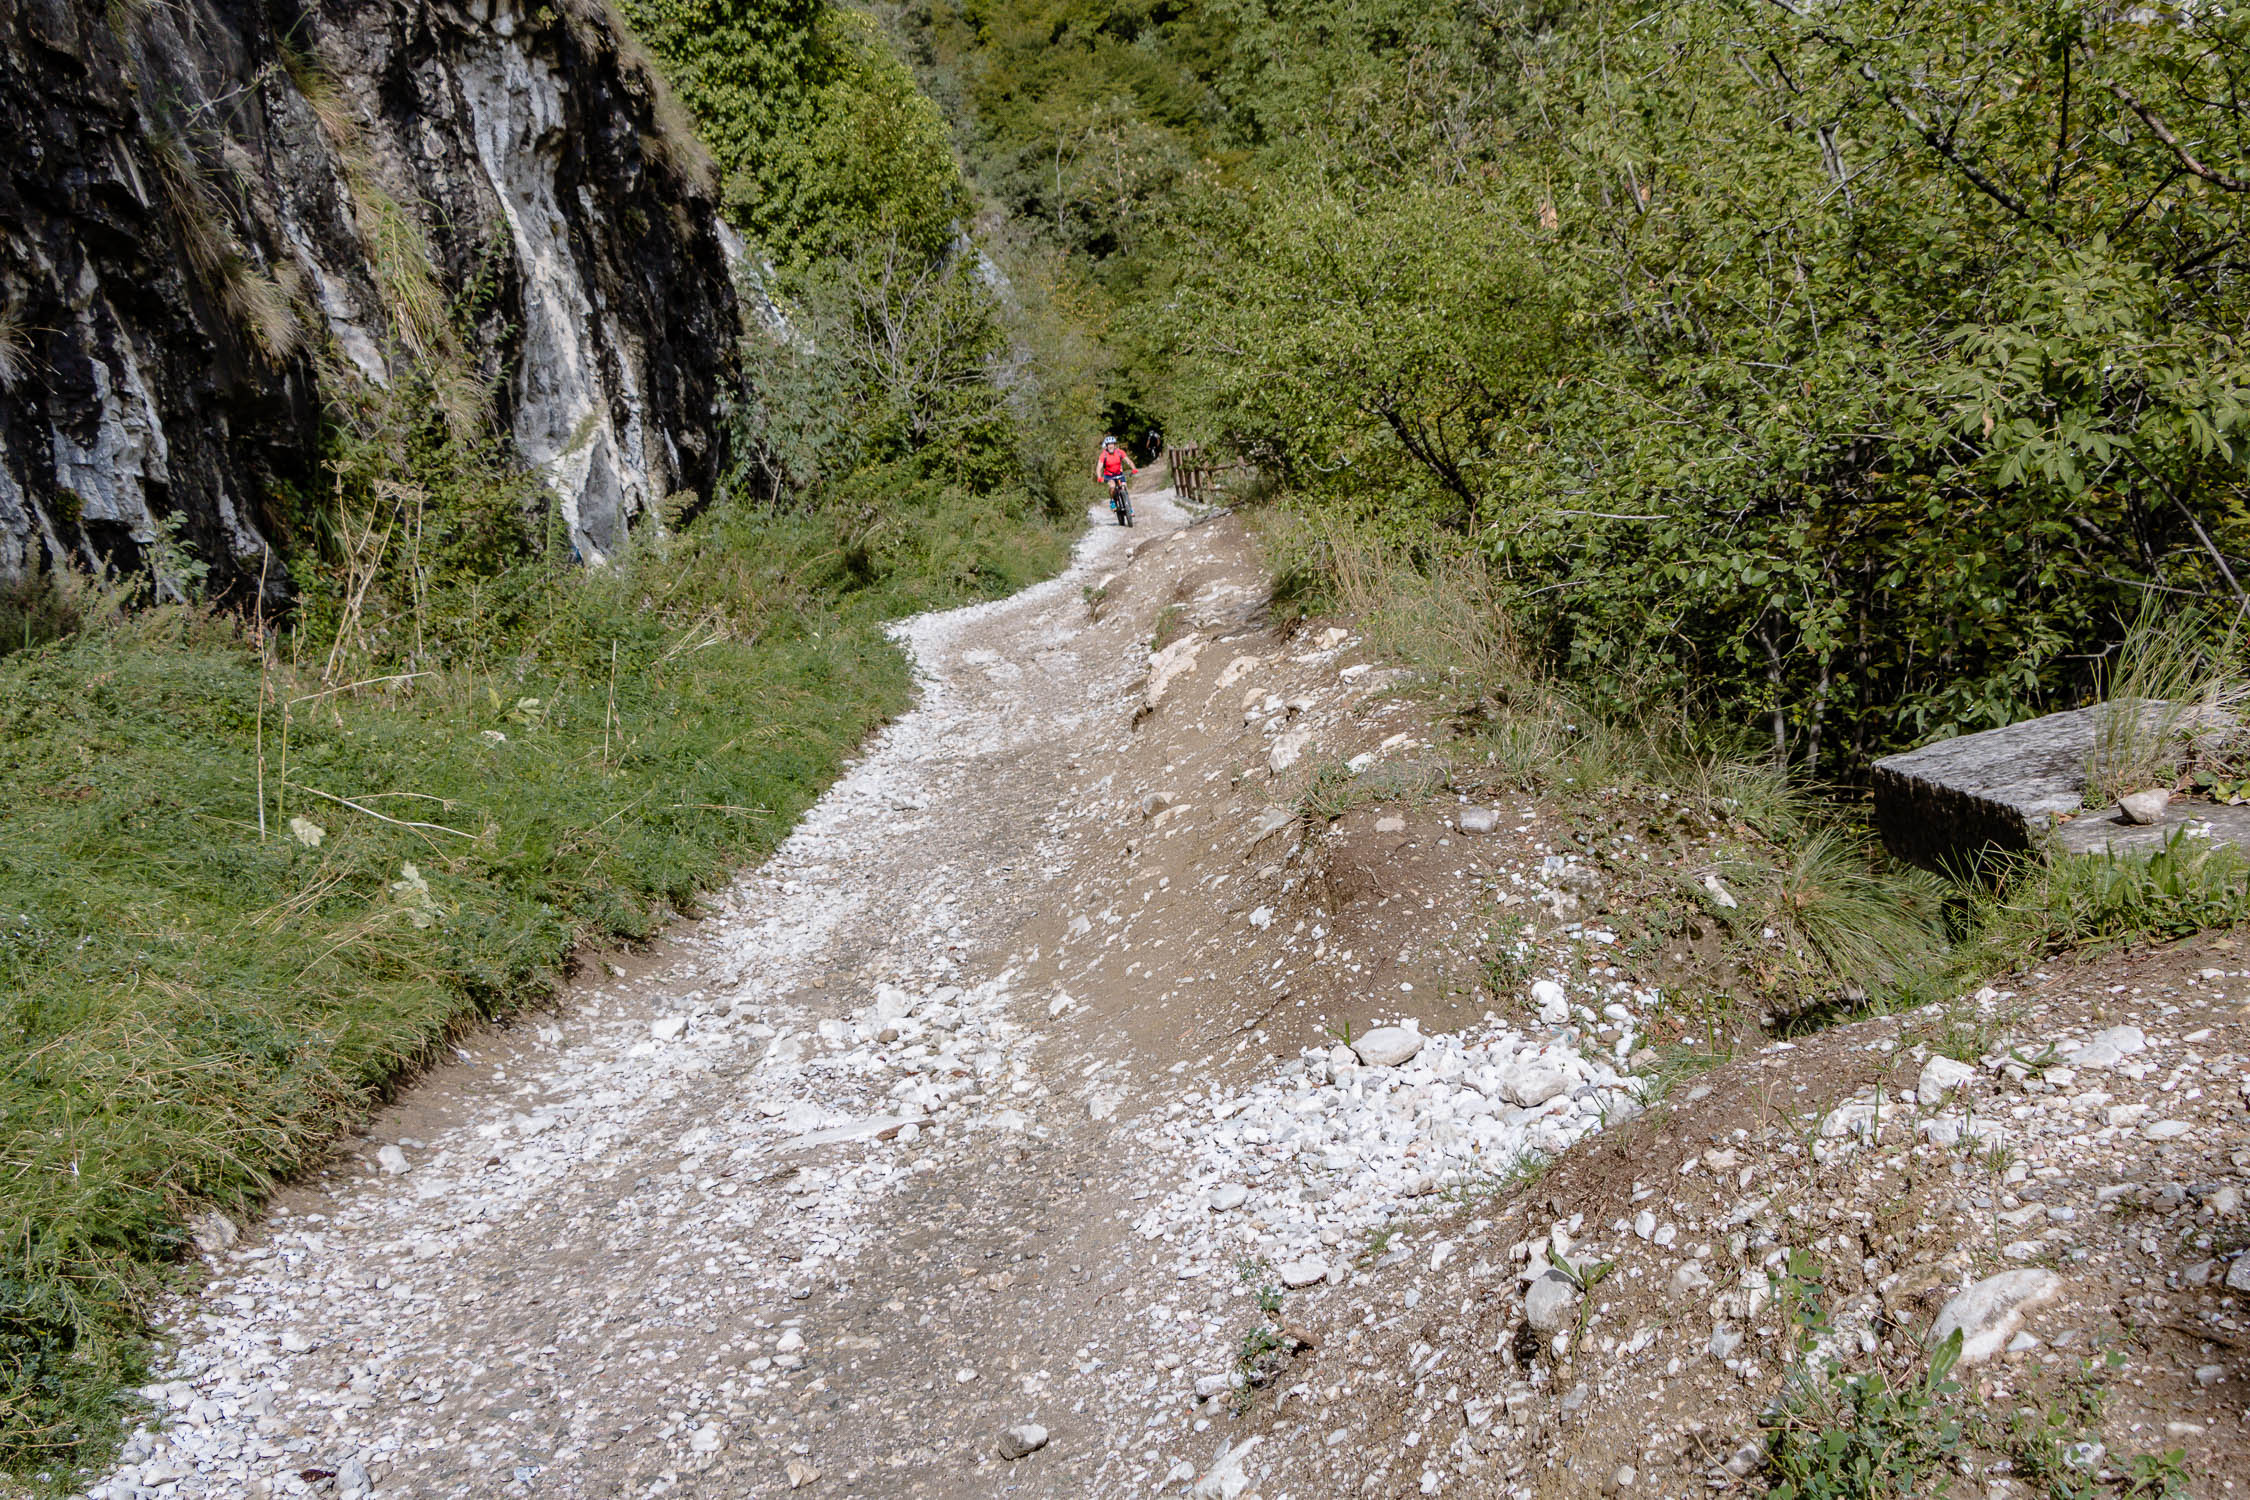 Riva del Garda am Gardasee ideal zum Wandern und Radfahren, Trentino, Italien, Pregasina, Lendrotal, Monte Brione, Bastion, Ponale-Strasse, MAG-Museo,